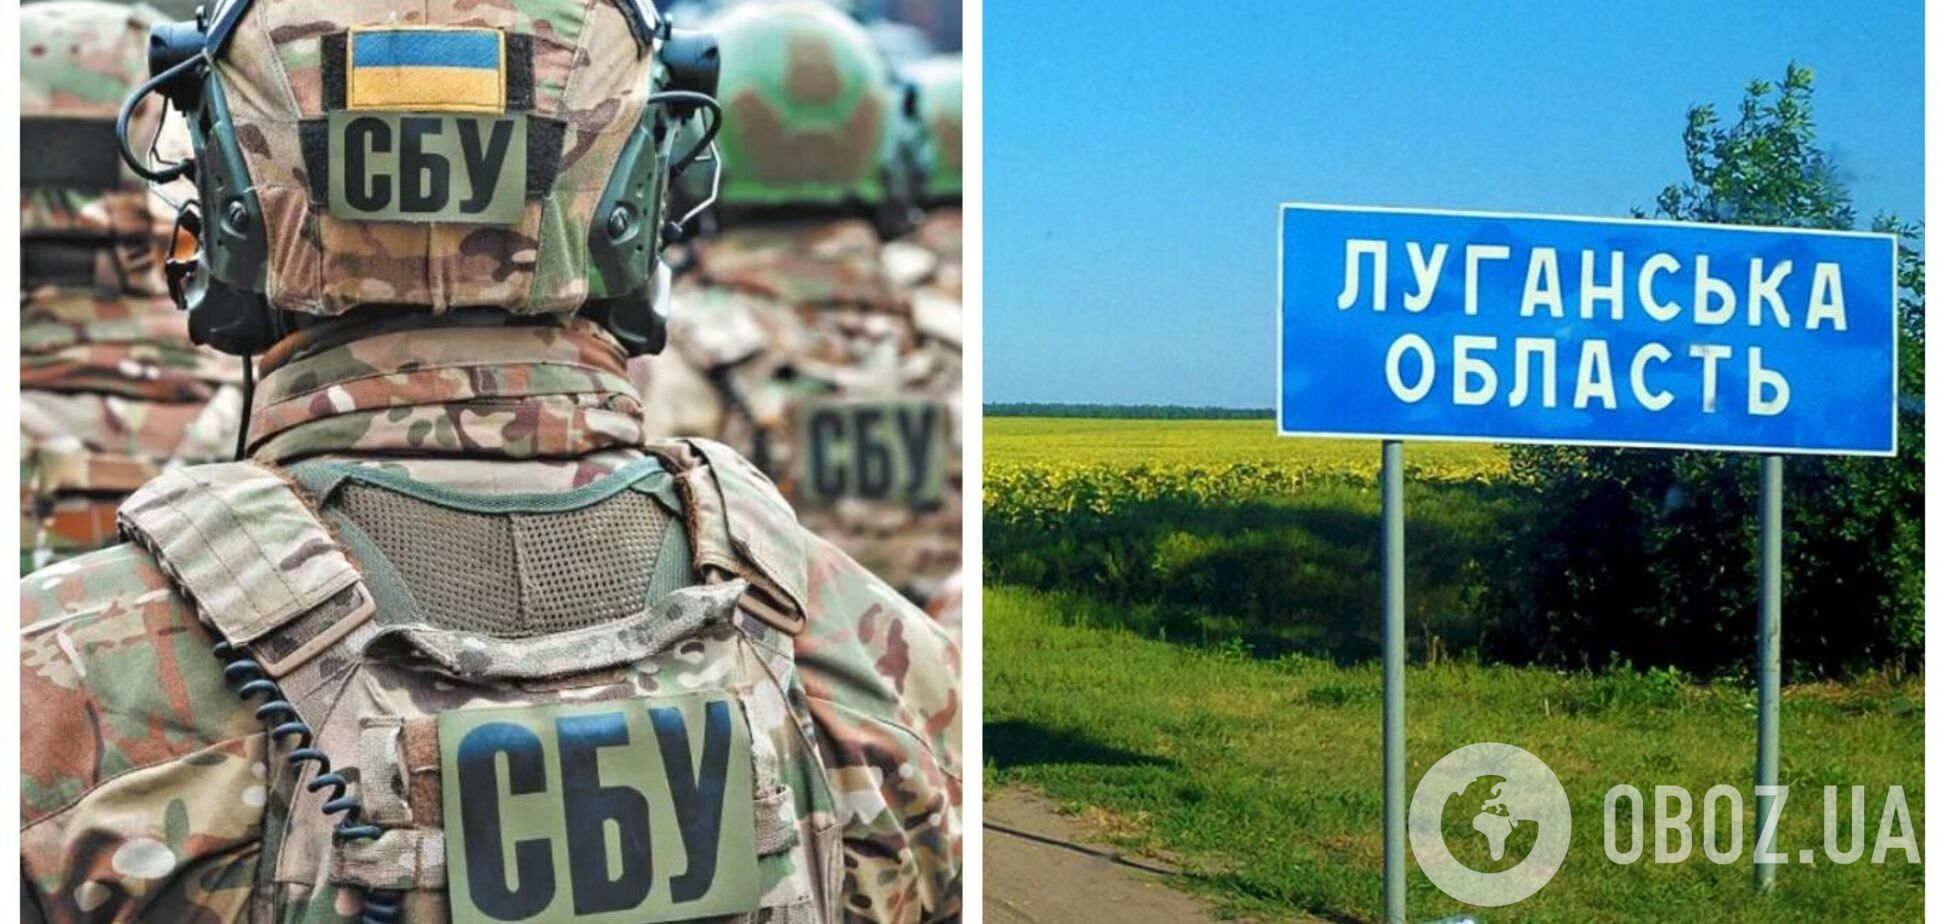 СБУ идентифицировала еще 30 коллаборантов в Луганской области: некоторые причастны к похищению людей и ограблениям